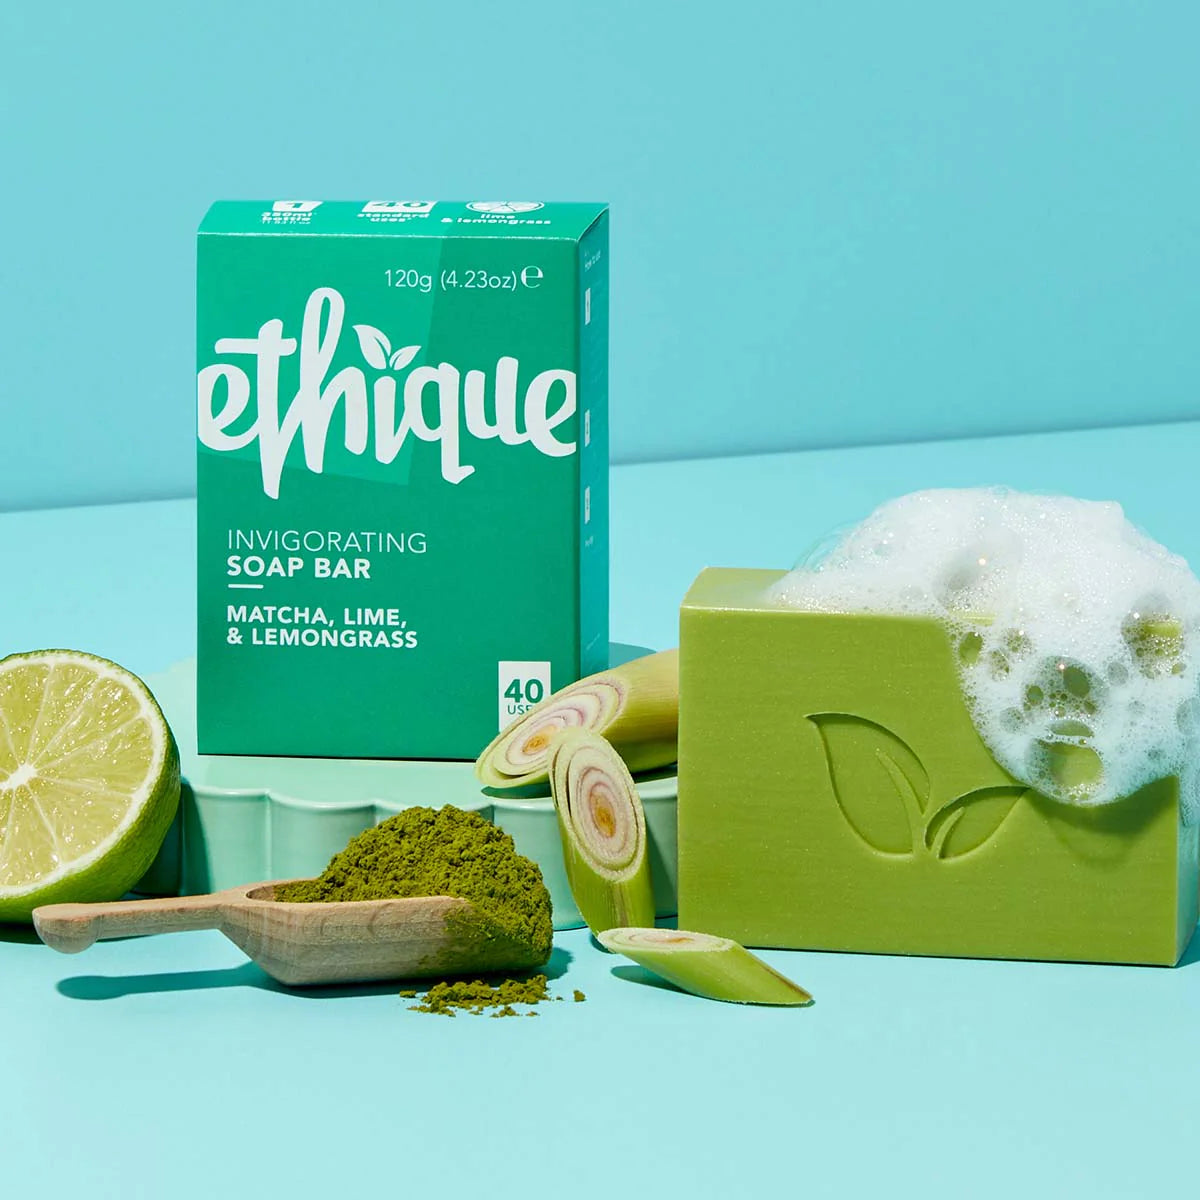 Ethique Invigorating Matcha, Lime, & Lemongrass Soap Bar-The Living Co.